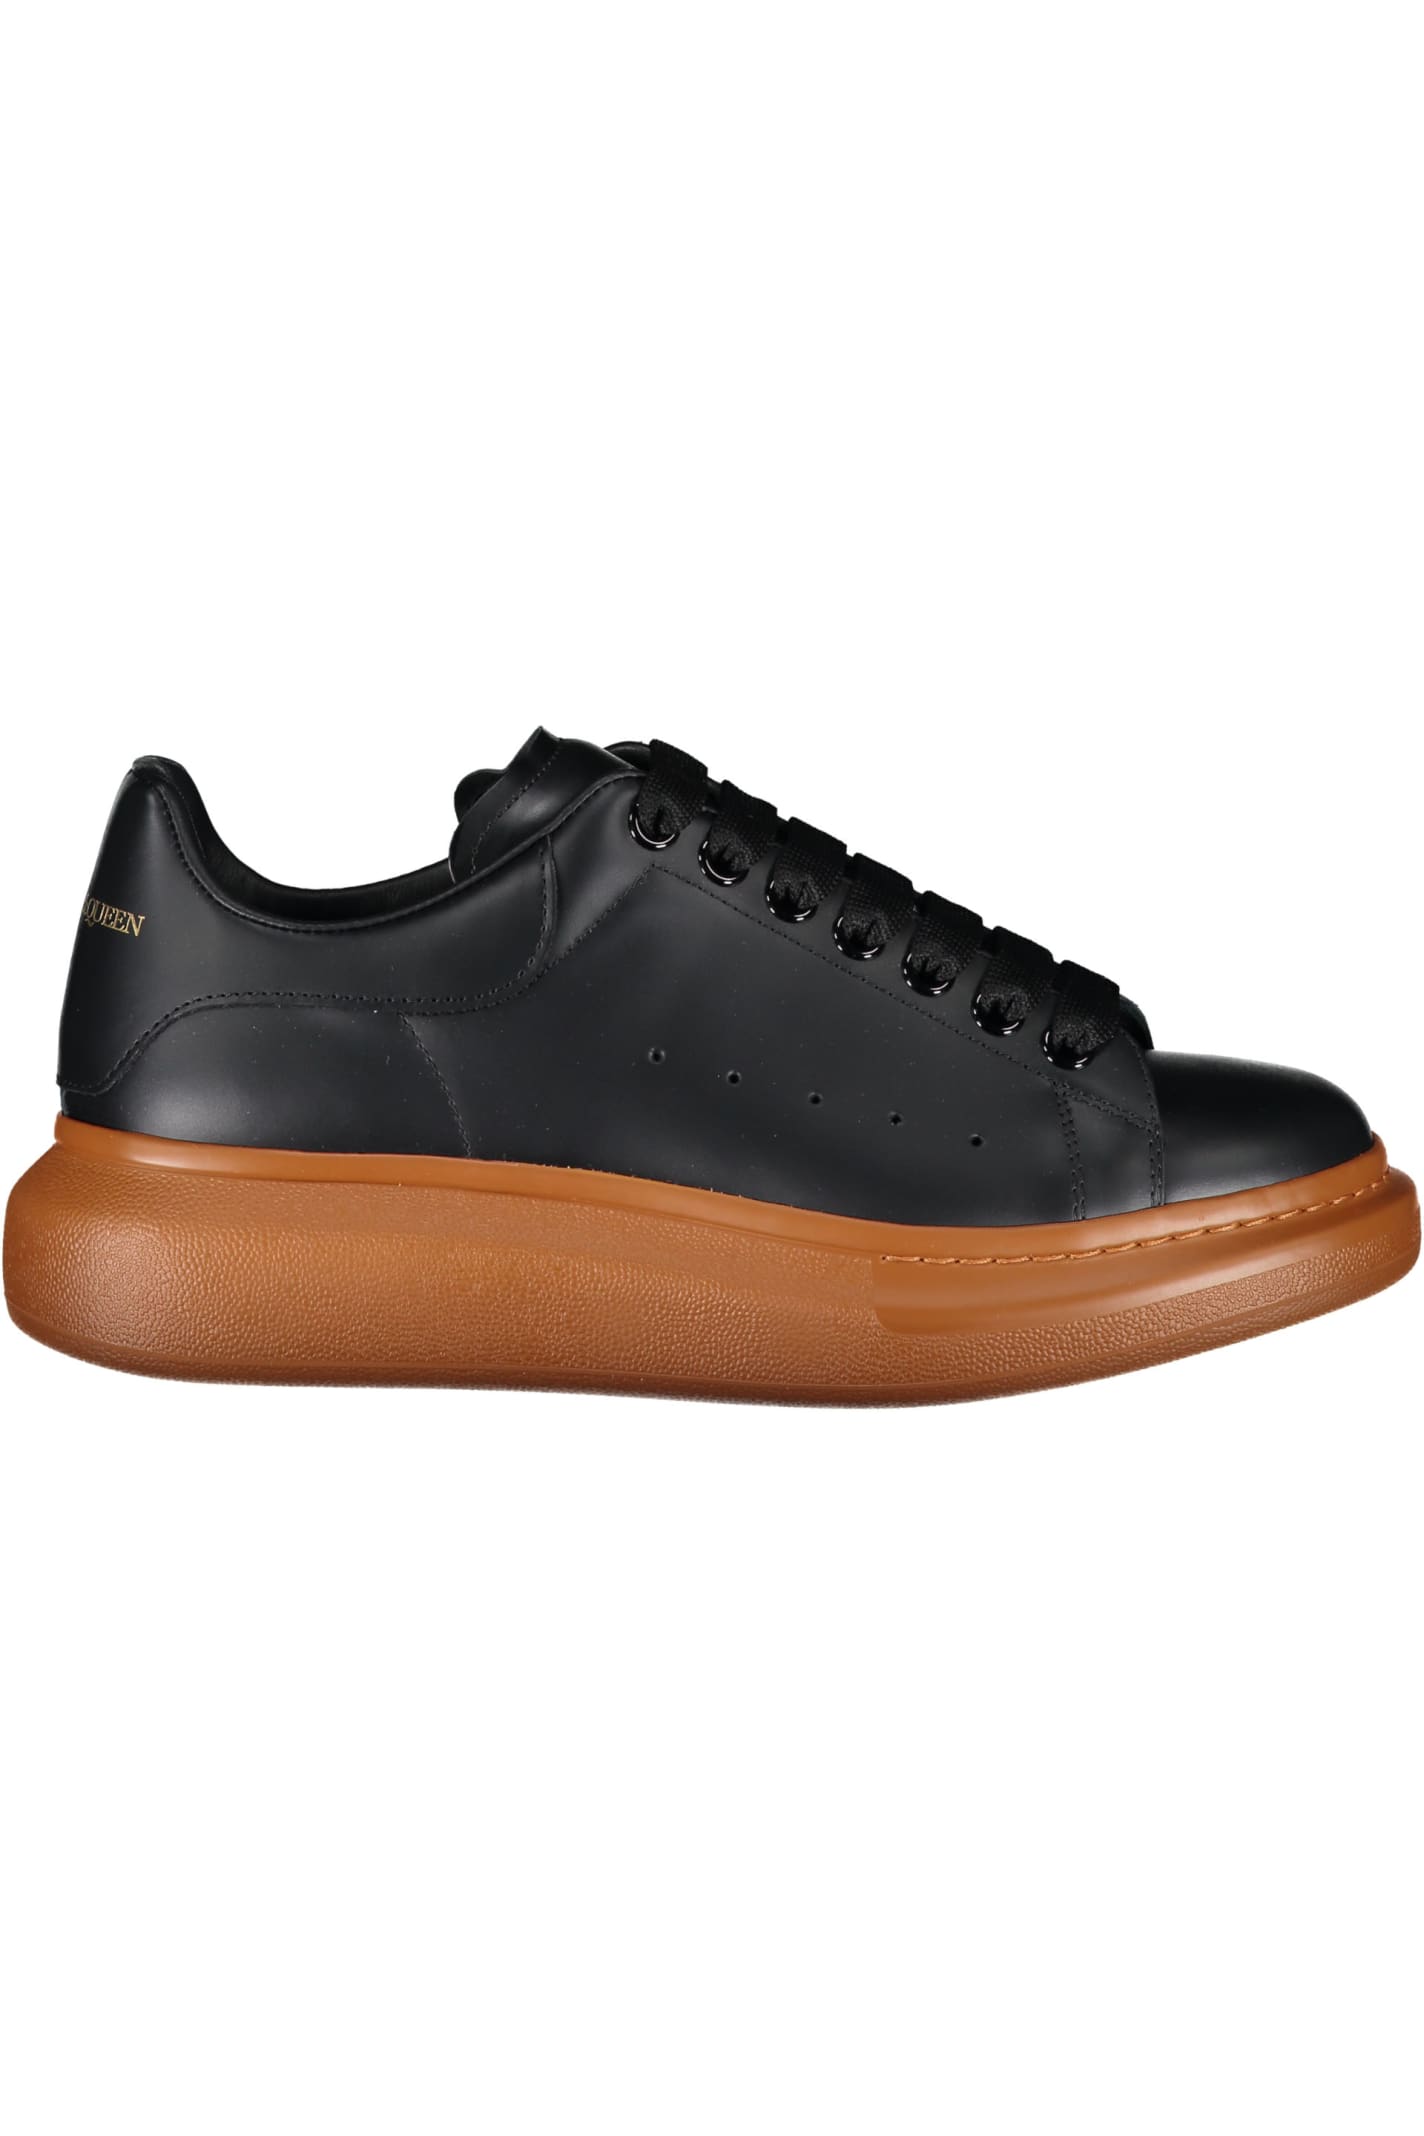 Alexander Mcqueen Larry Leather Sneakers In Black